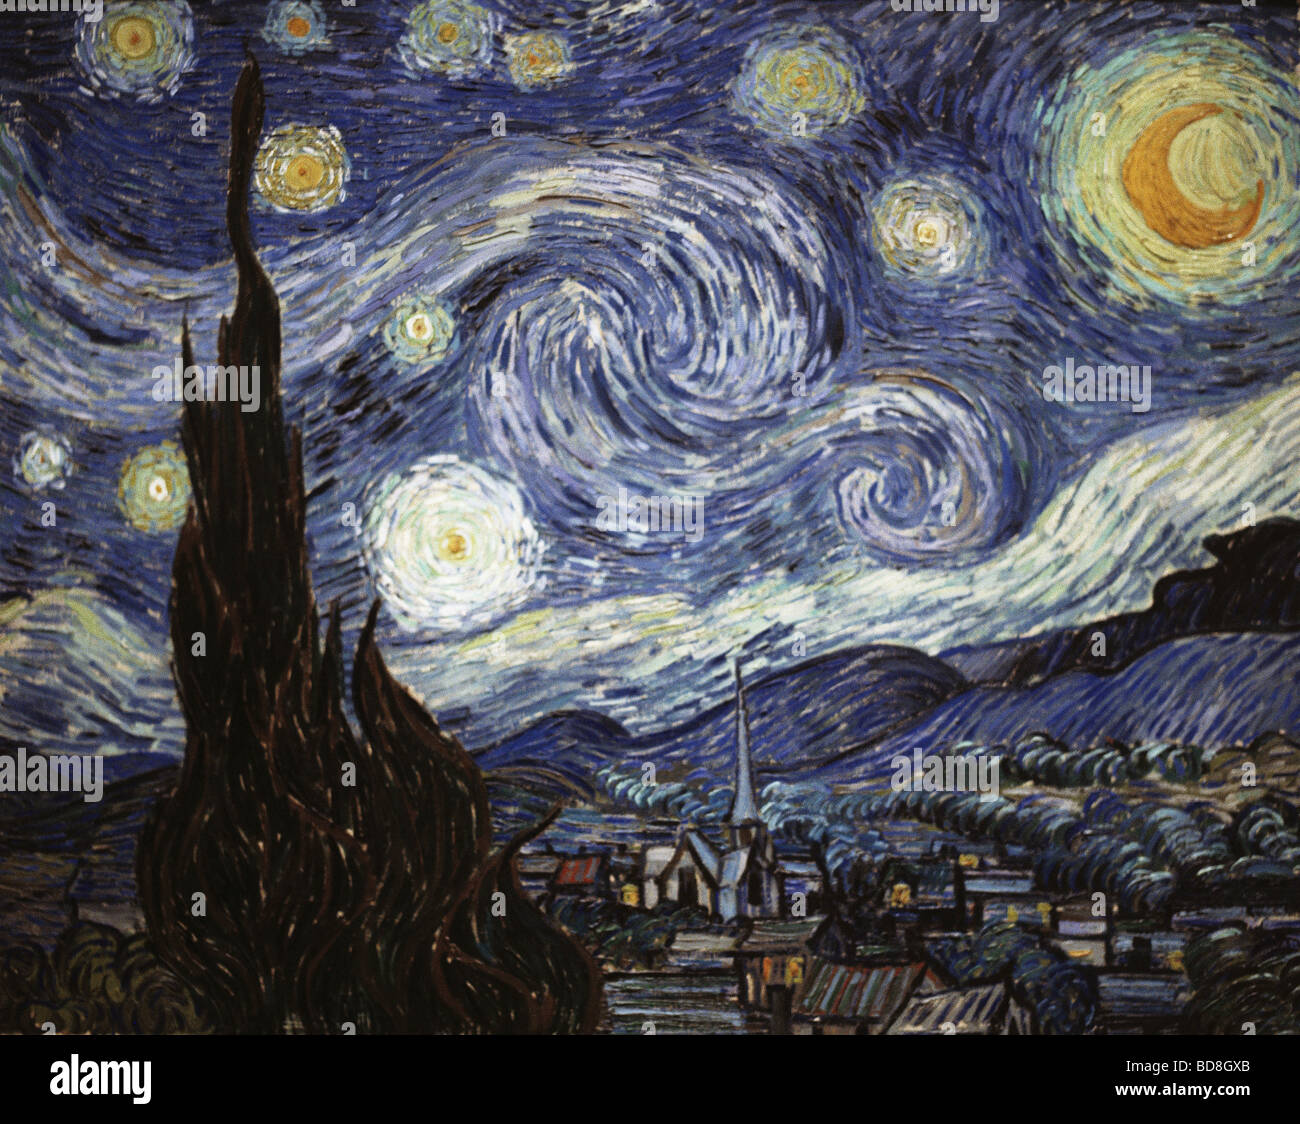 Beaux-arts, Vincent van Gogh, (1853 - 1890), peinture, 'La Nuit étoilée', huile sur toile, 73 x 92 cm, 1889, National Gallery of Art, Washington, D.C., l'artiste n'a pas d'auteur pour être effacé Banque D'Images